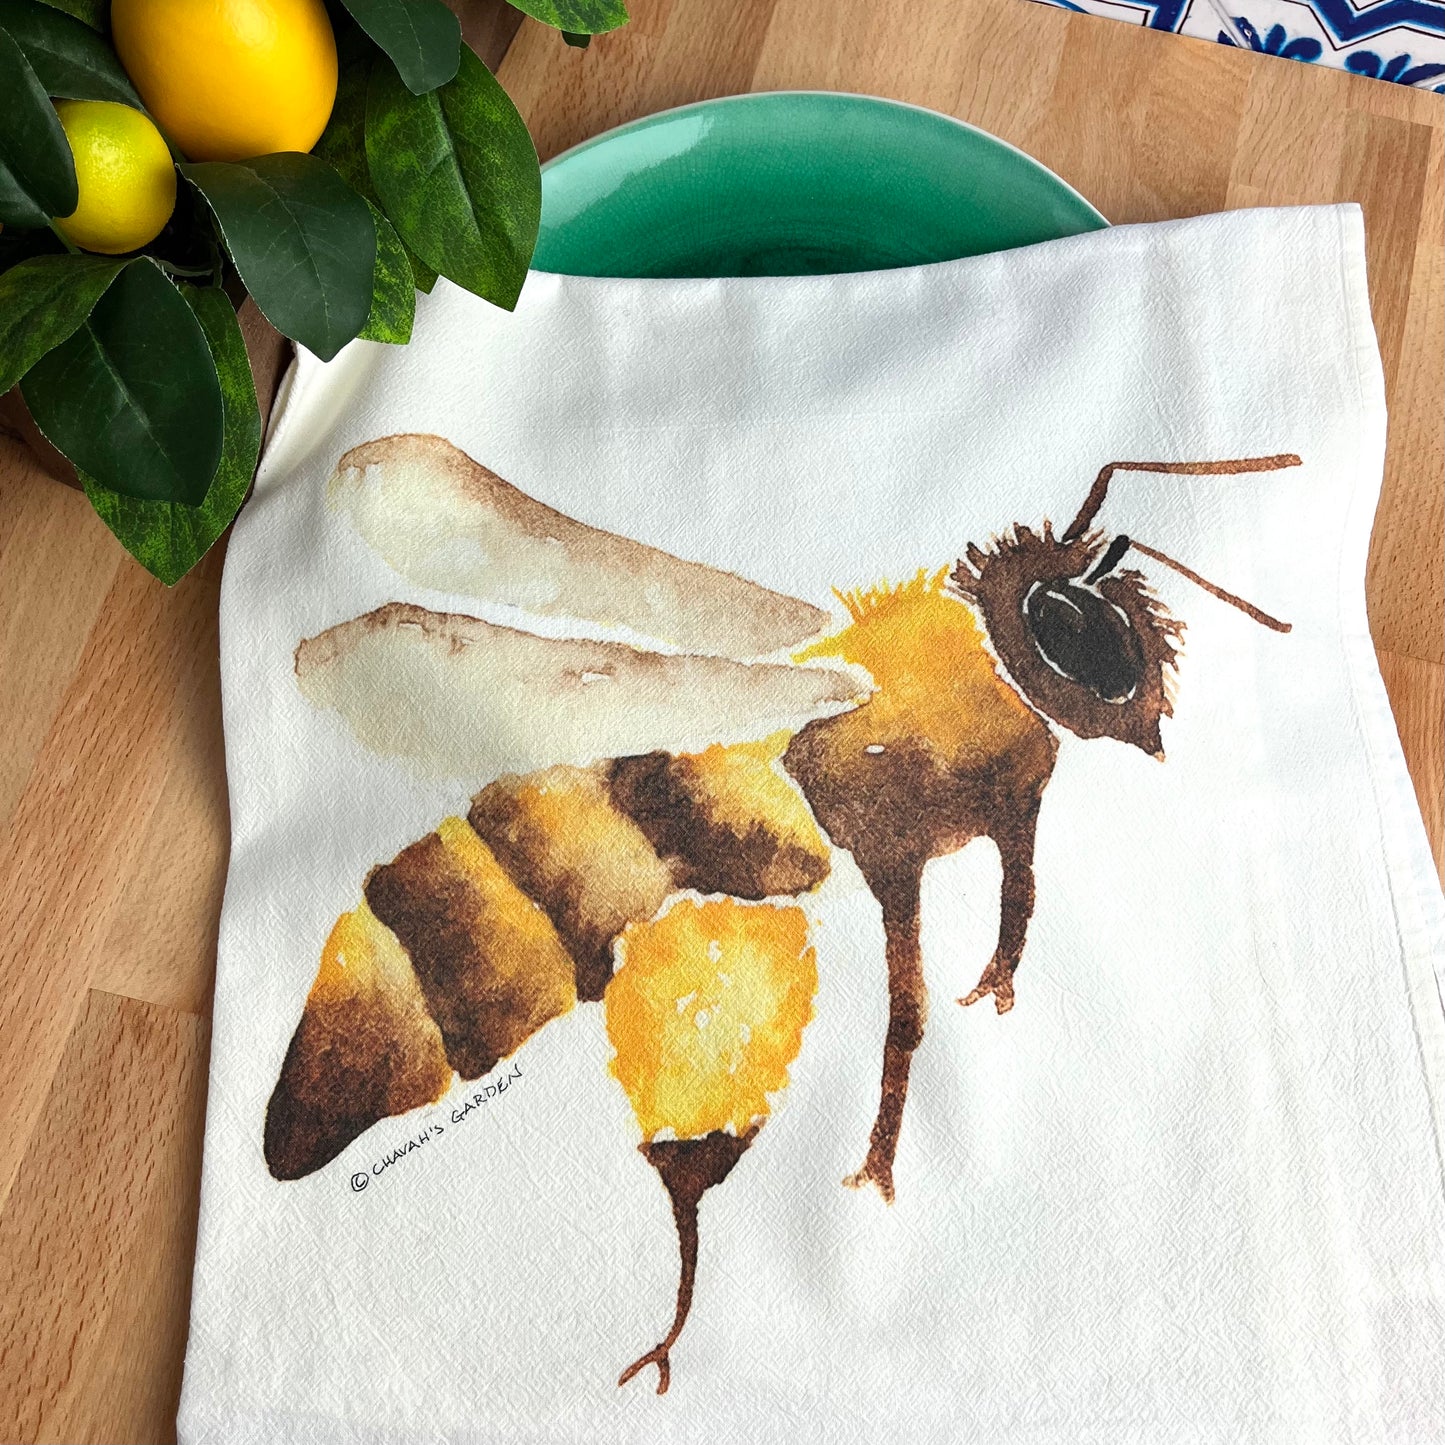 Honey Bee Flour Sack Tea Towels, Garden, Pollinator